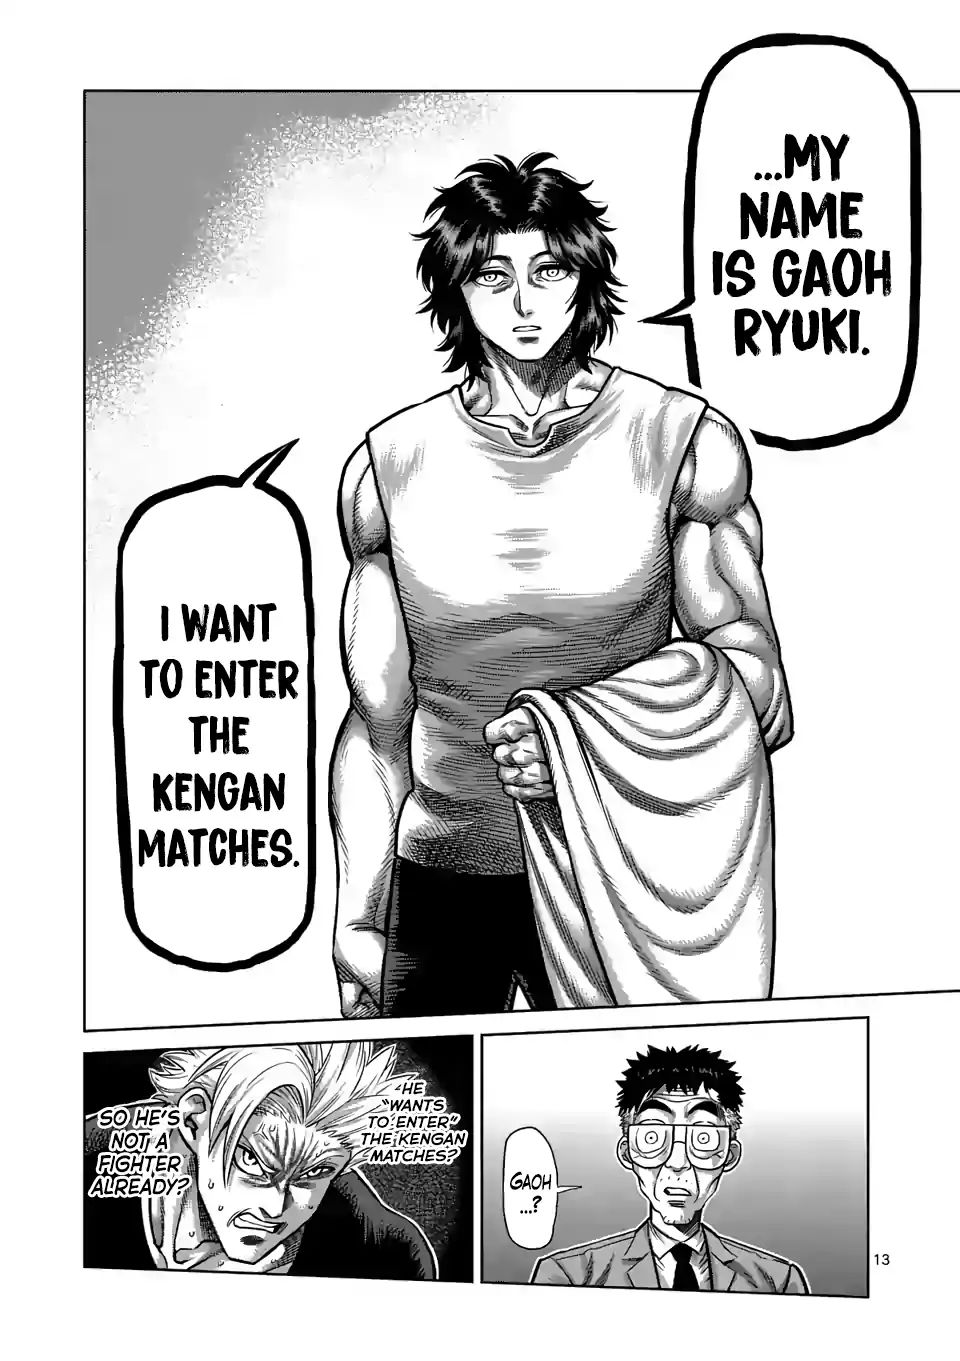 Kengan Omega, Chapter 3 Koga And Ryuki image 13